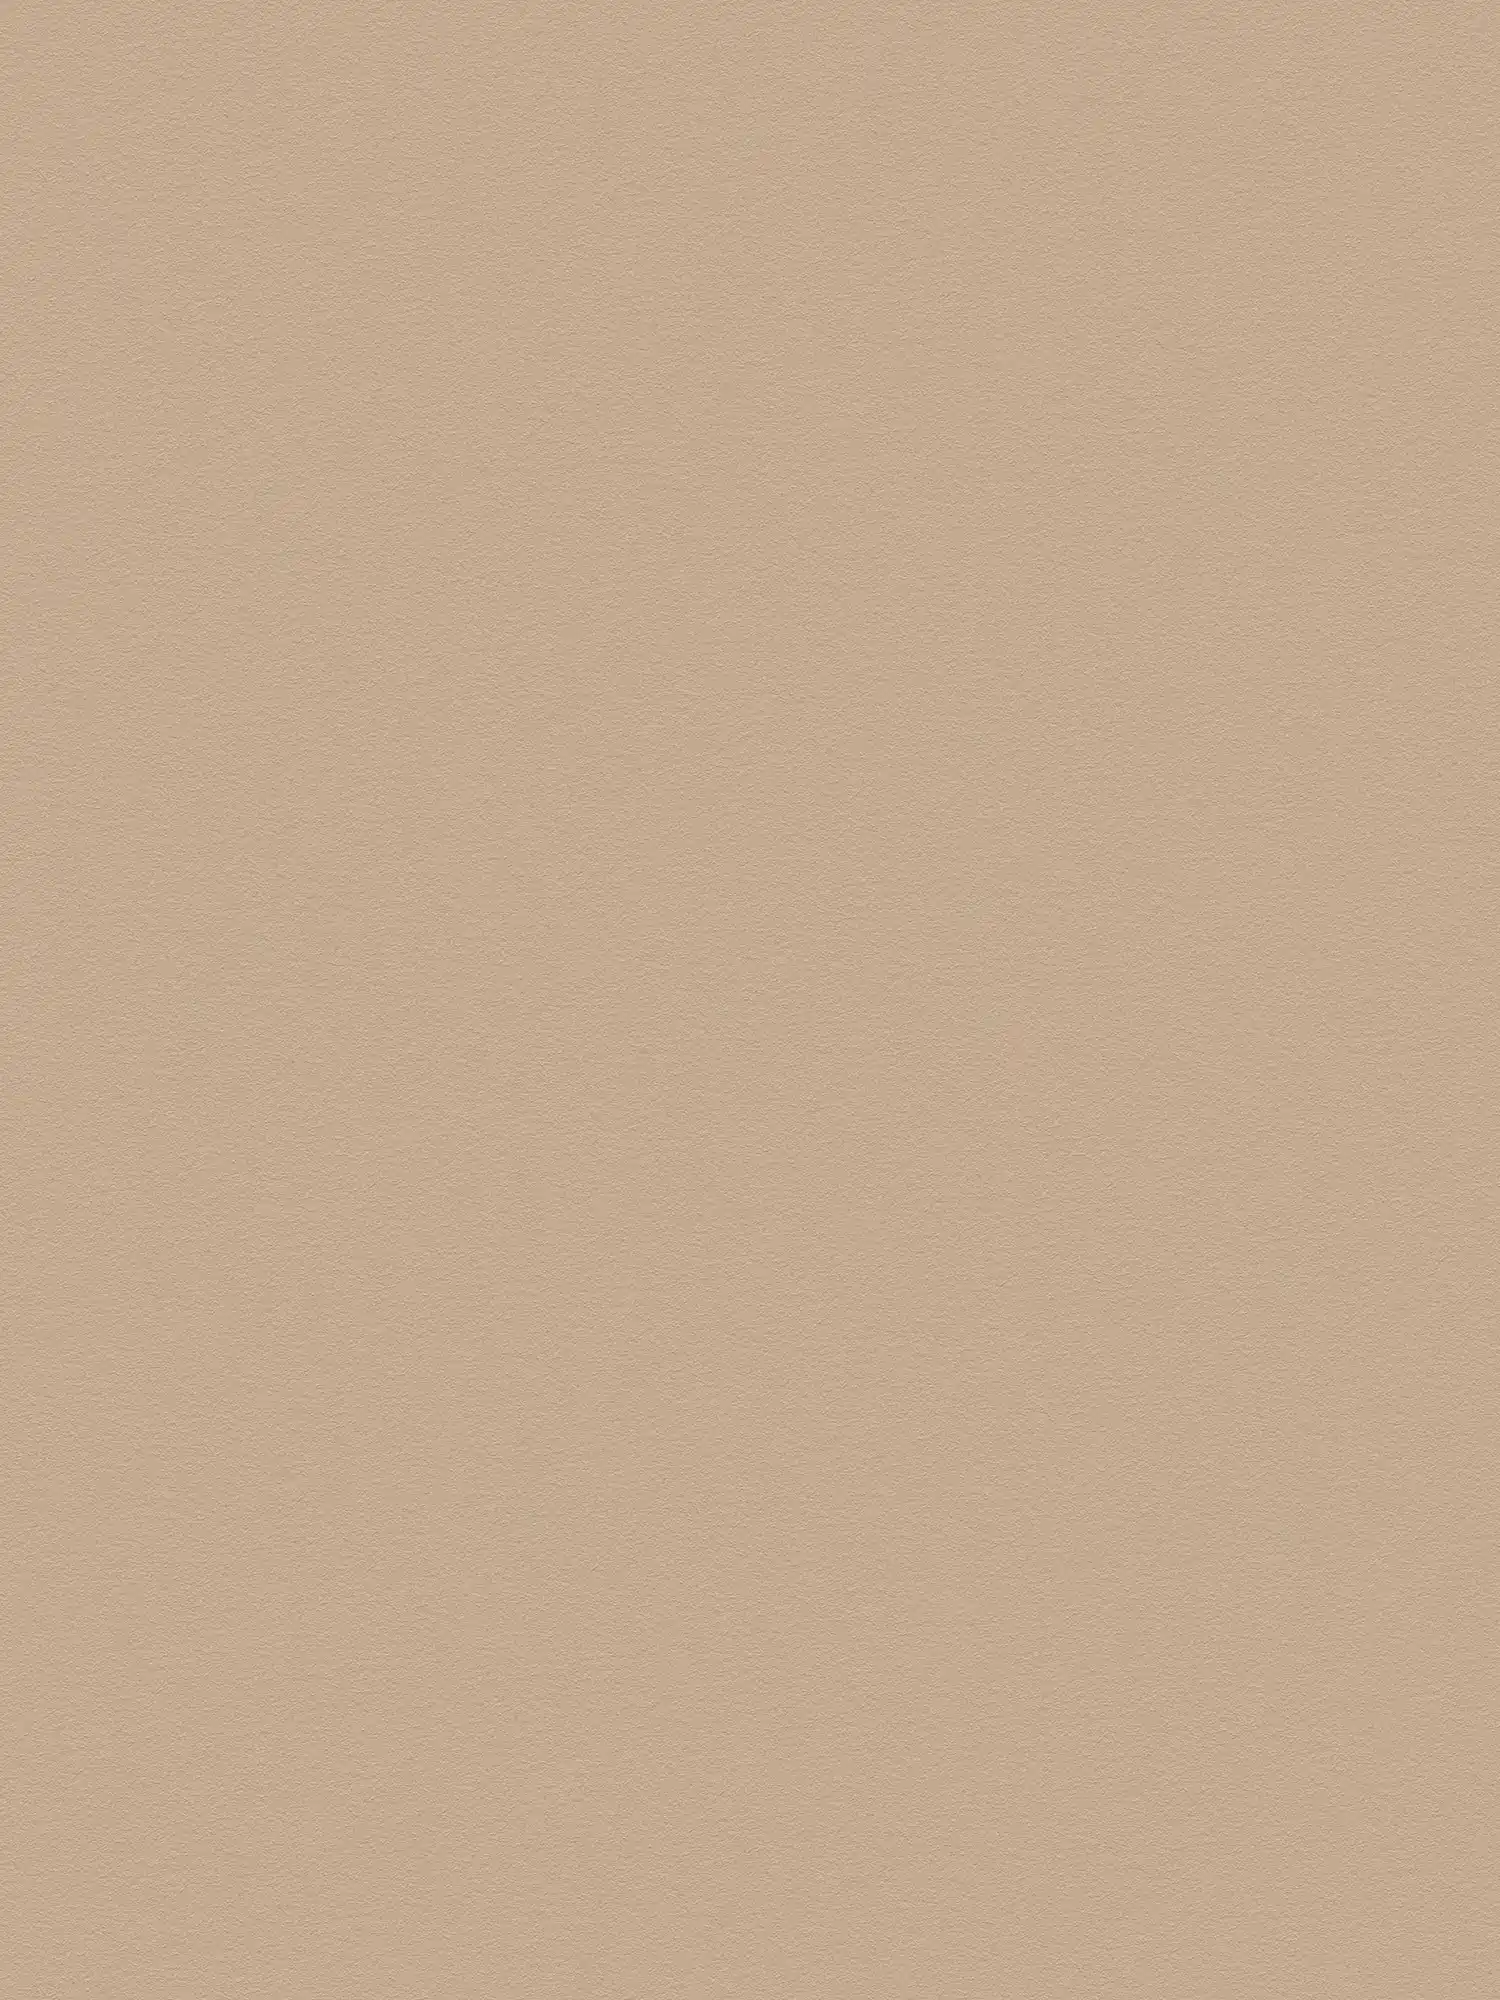 Papel pintado liso marrón claro con superficie lisa - beige, marrón
